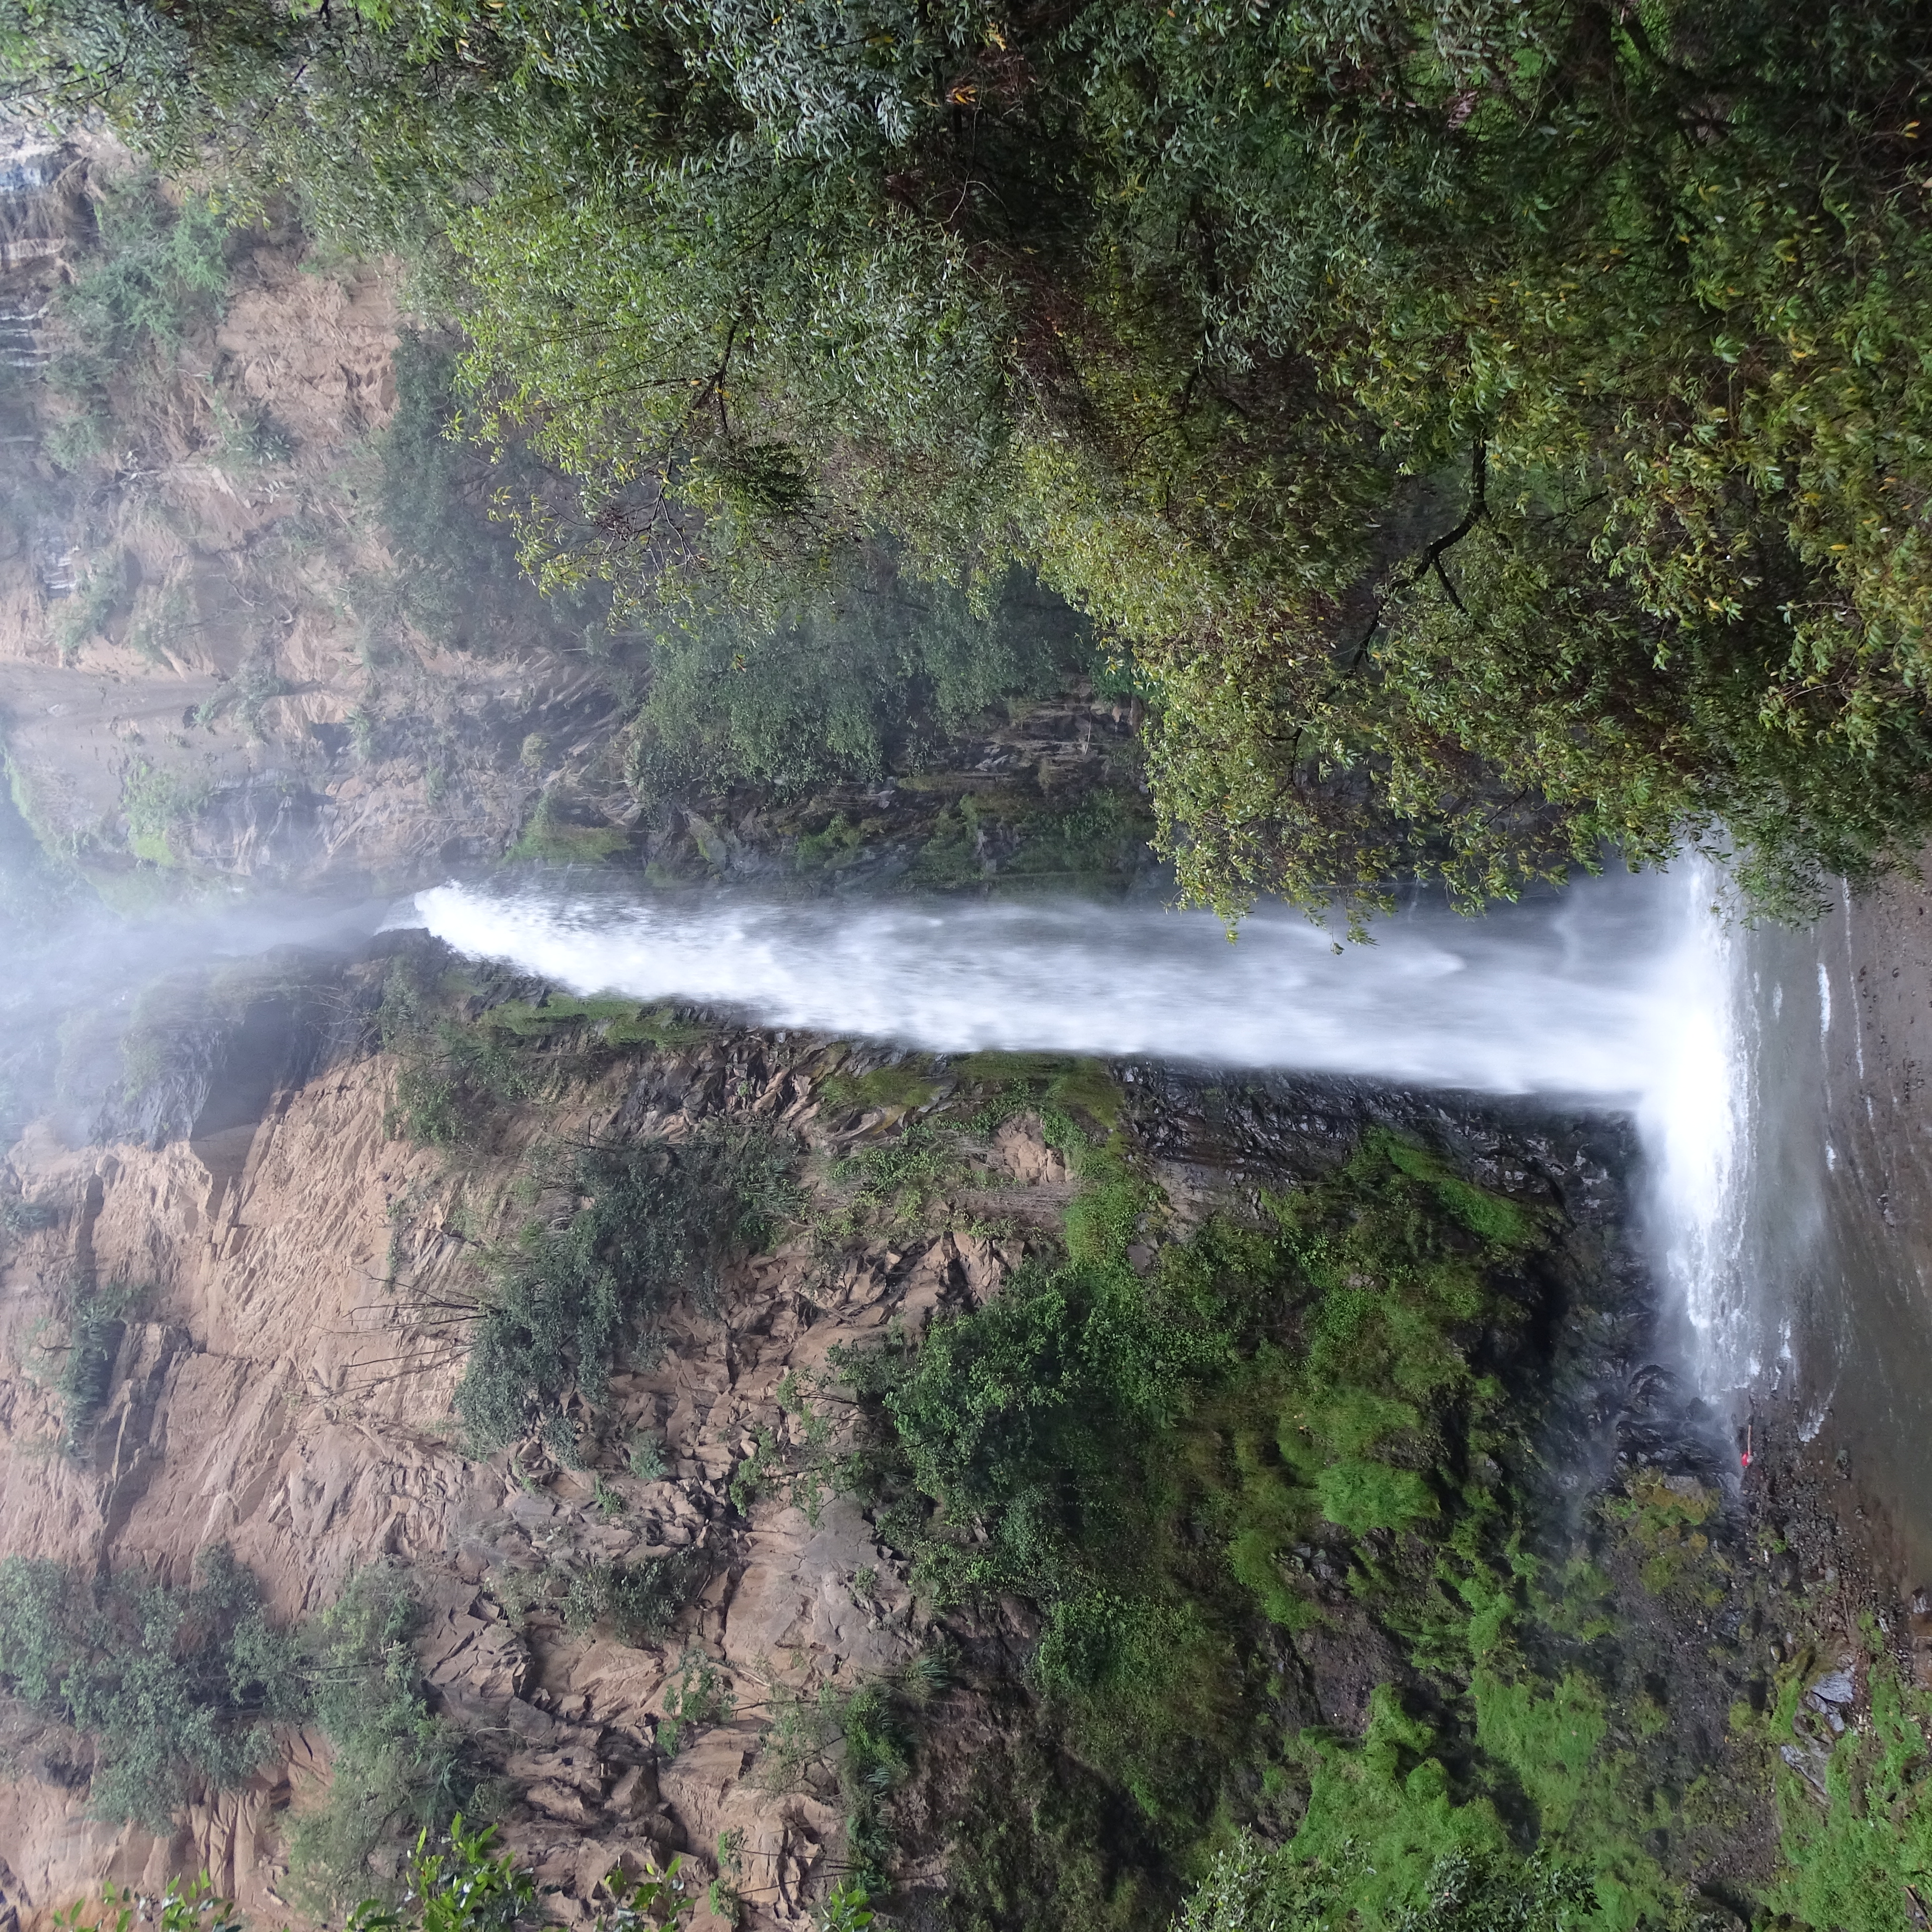 Zona Protectora Forestal los terrenos constitutivos de las cuencas de los ríos Valle de Bravo, Malacatepec, Tilostoc y Temascaltepec